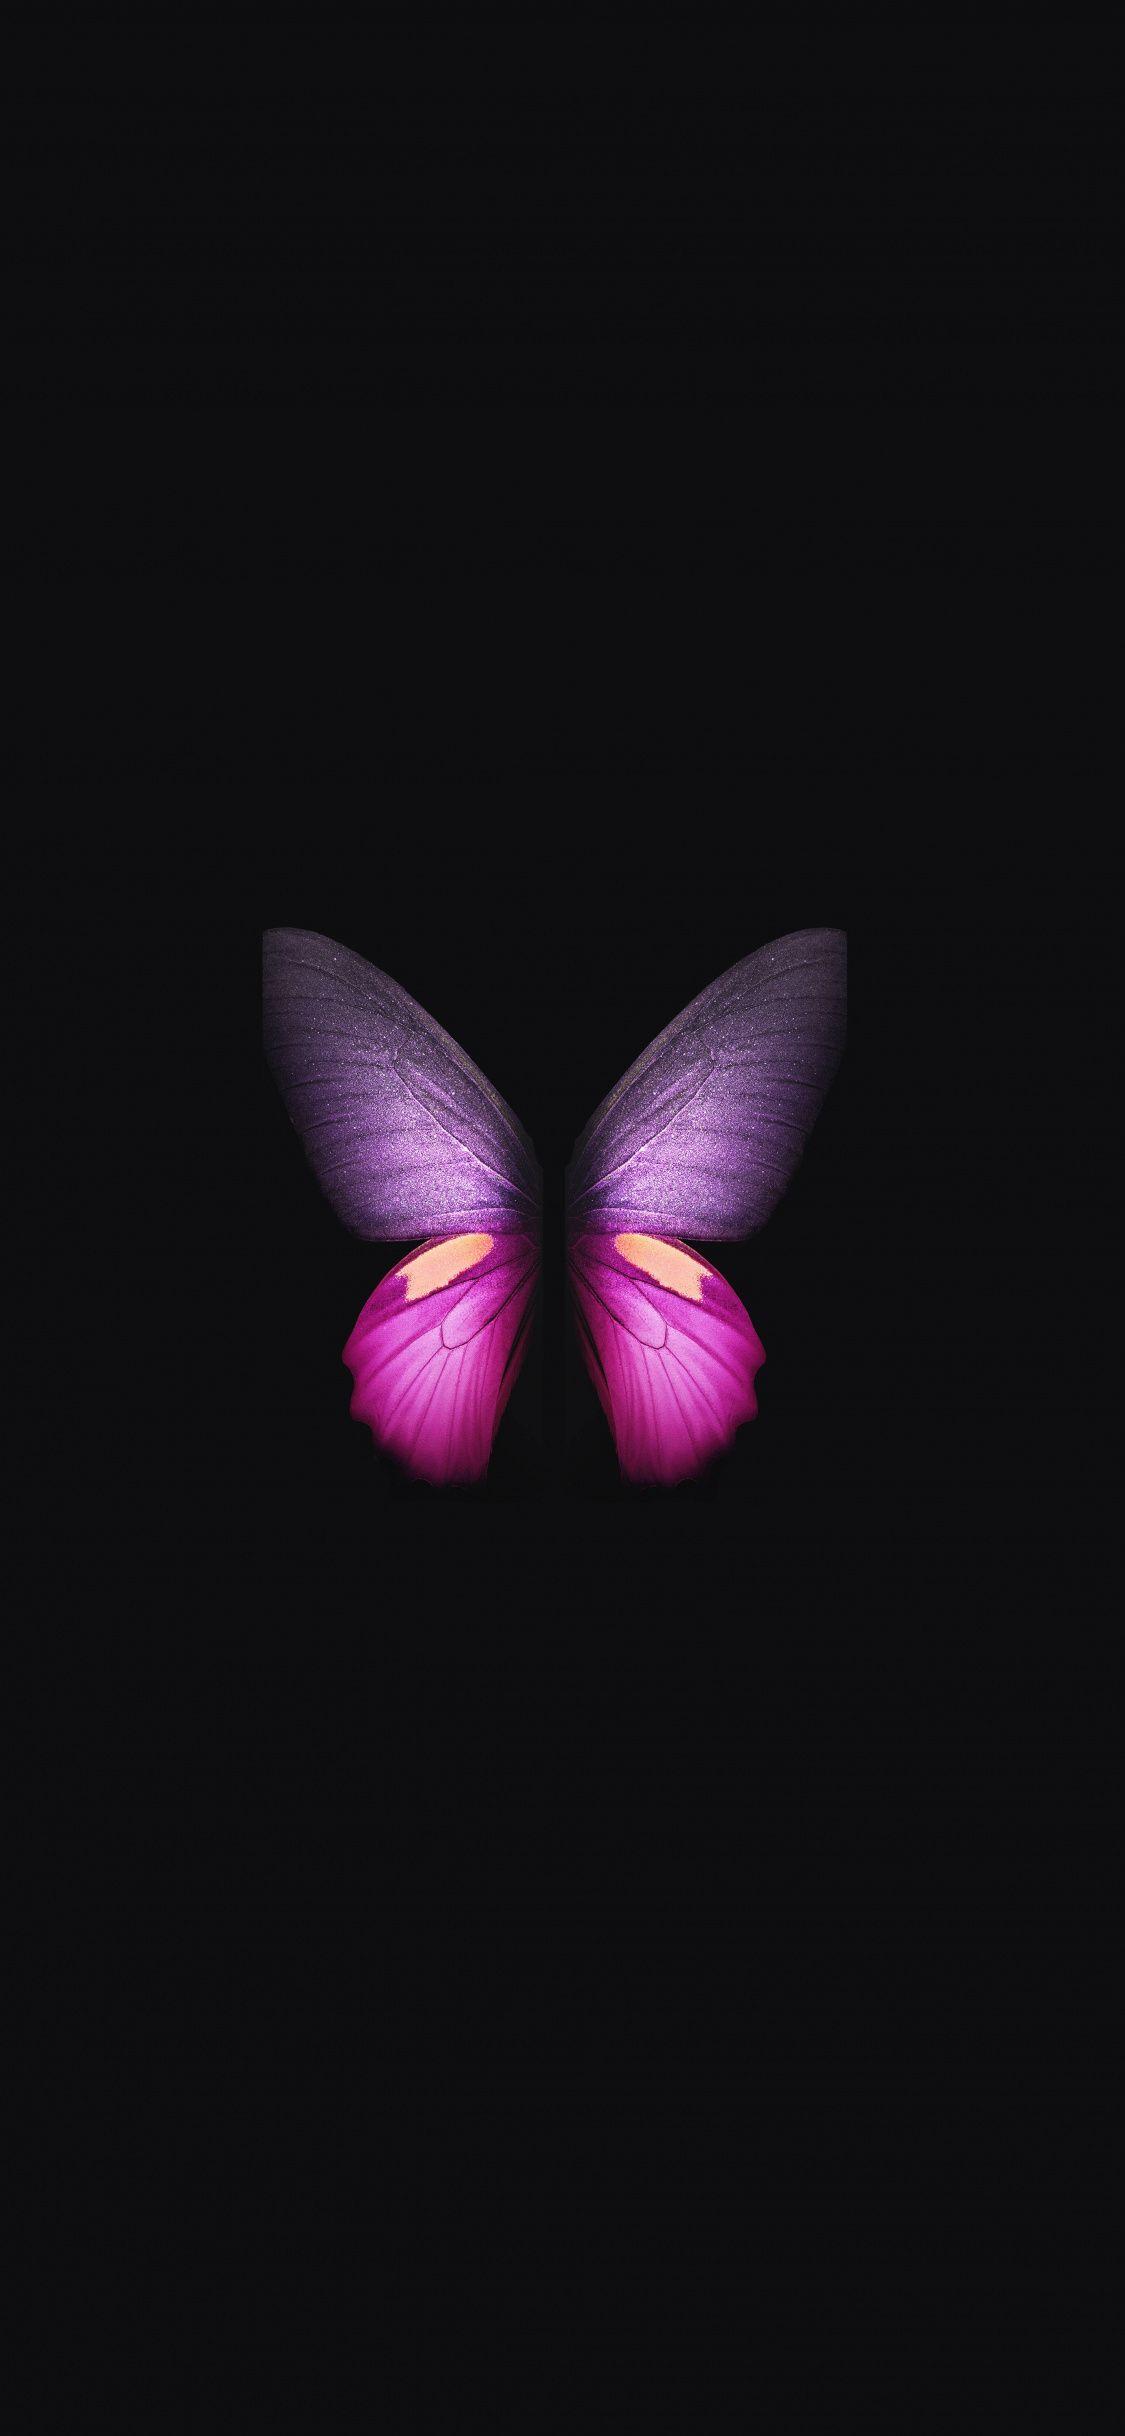 Purple Butterfly HD Wallpapers - Top Free Purple Butterfly HD ...